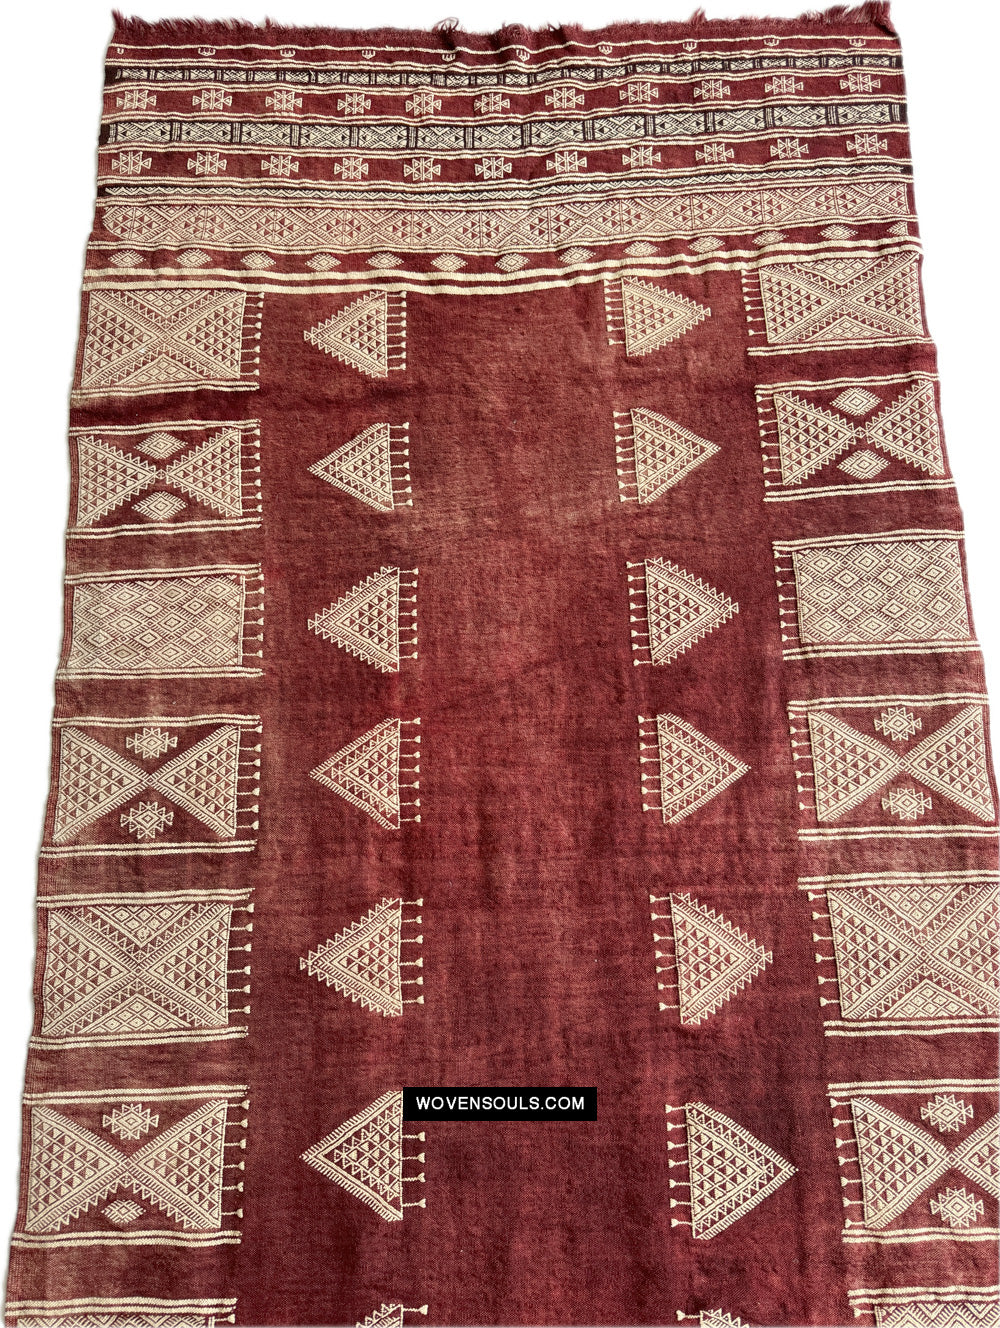 1864 Tunisino antico Bakhnoug Scialo - Capolavoro dell'arte tessile